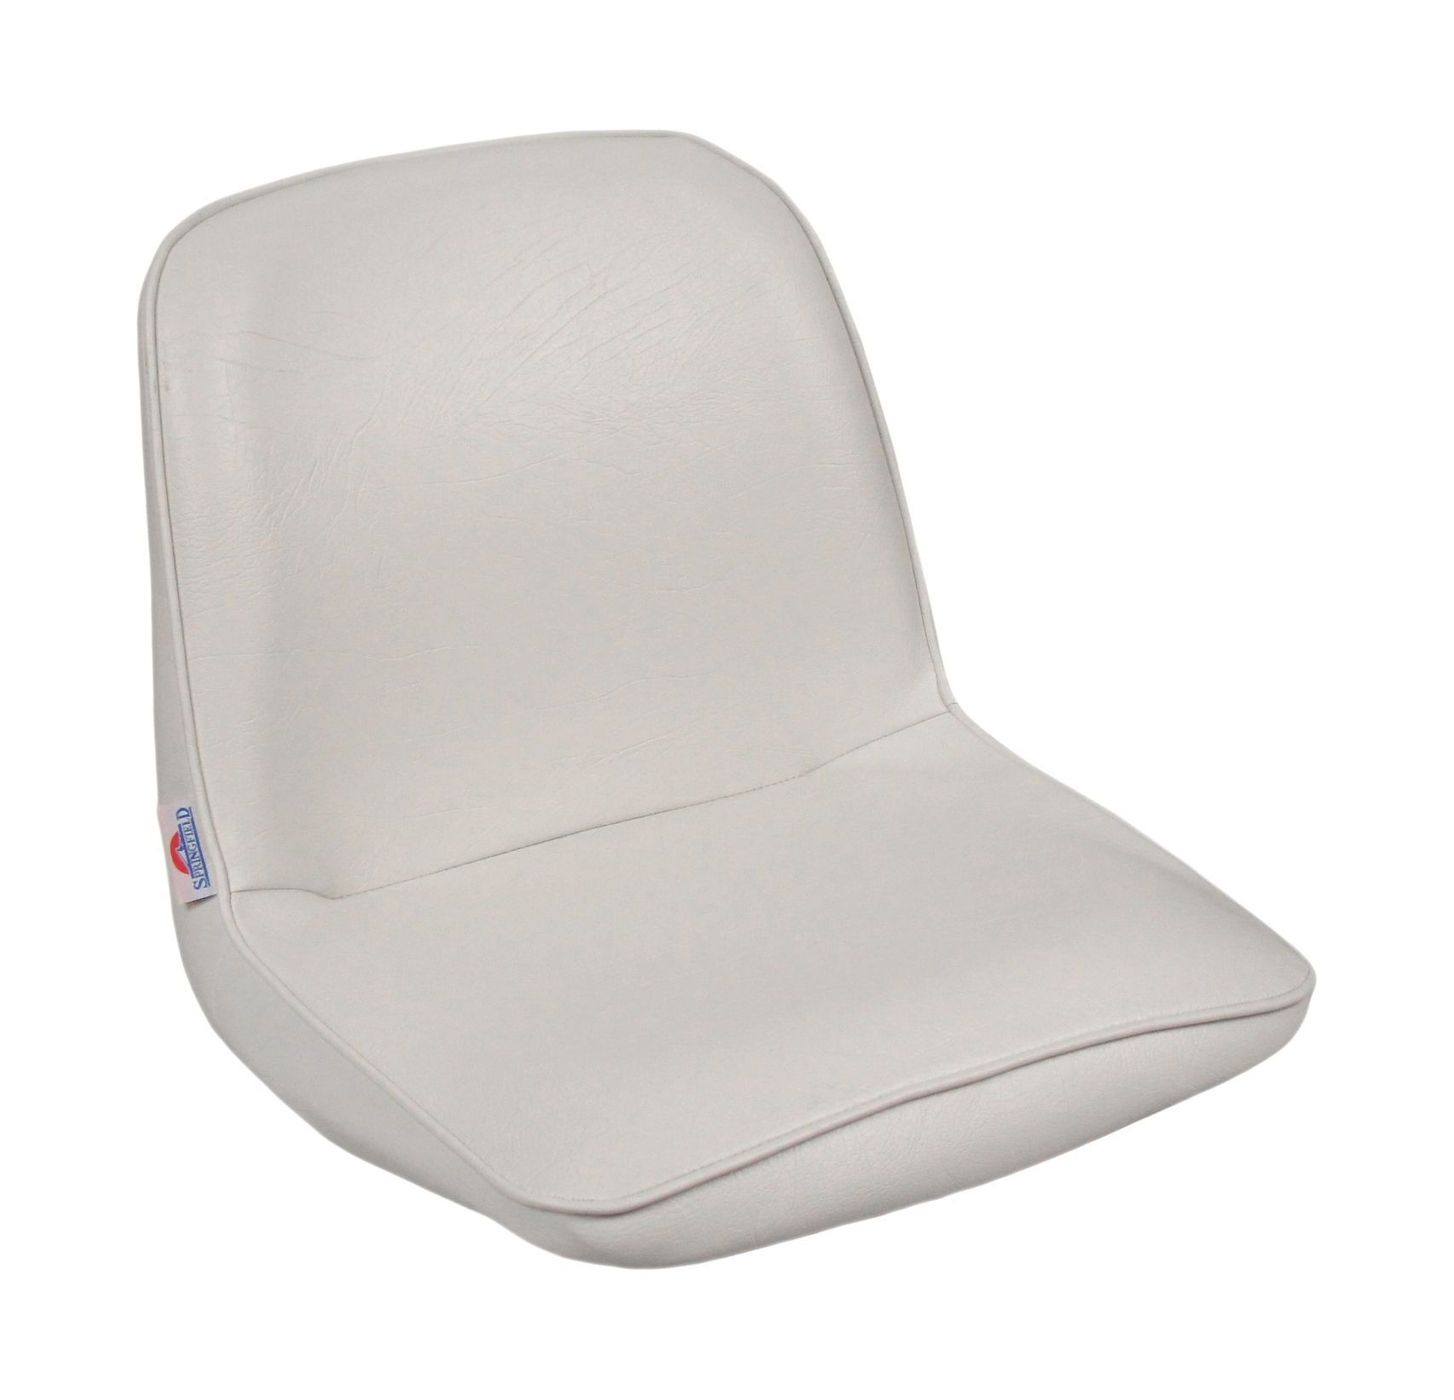 Кресло FIRST MATE мягкое, материал белый винил 1001006C кресло first mate мягкое материал белый винил 1001006c